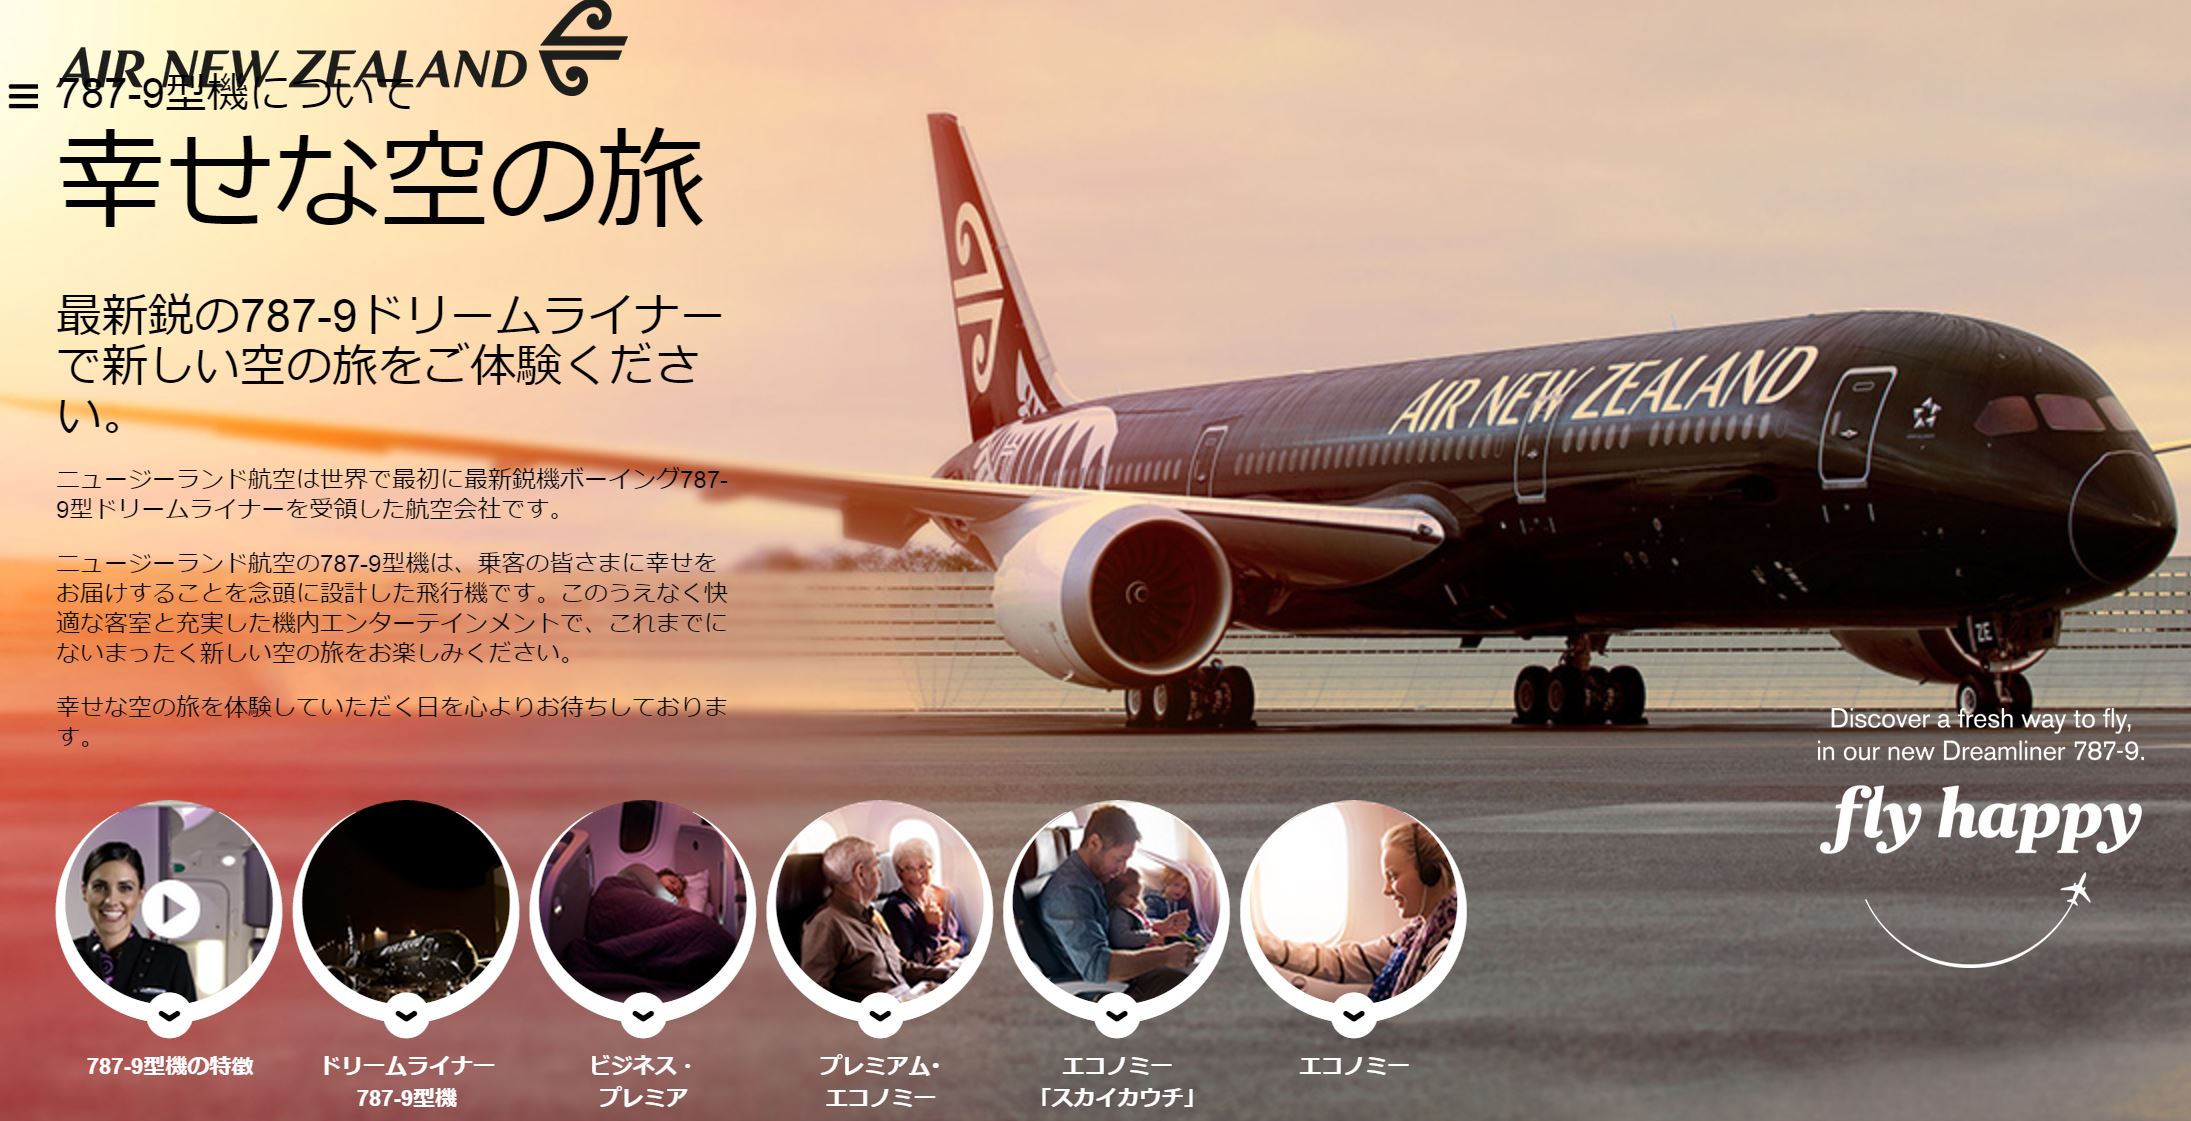 ニュージーランド航空が燃油サーチャージ廃止へ、2015年10月以降に日本を出発する航空券から